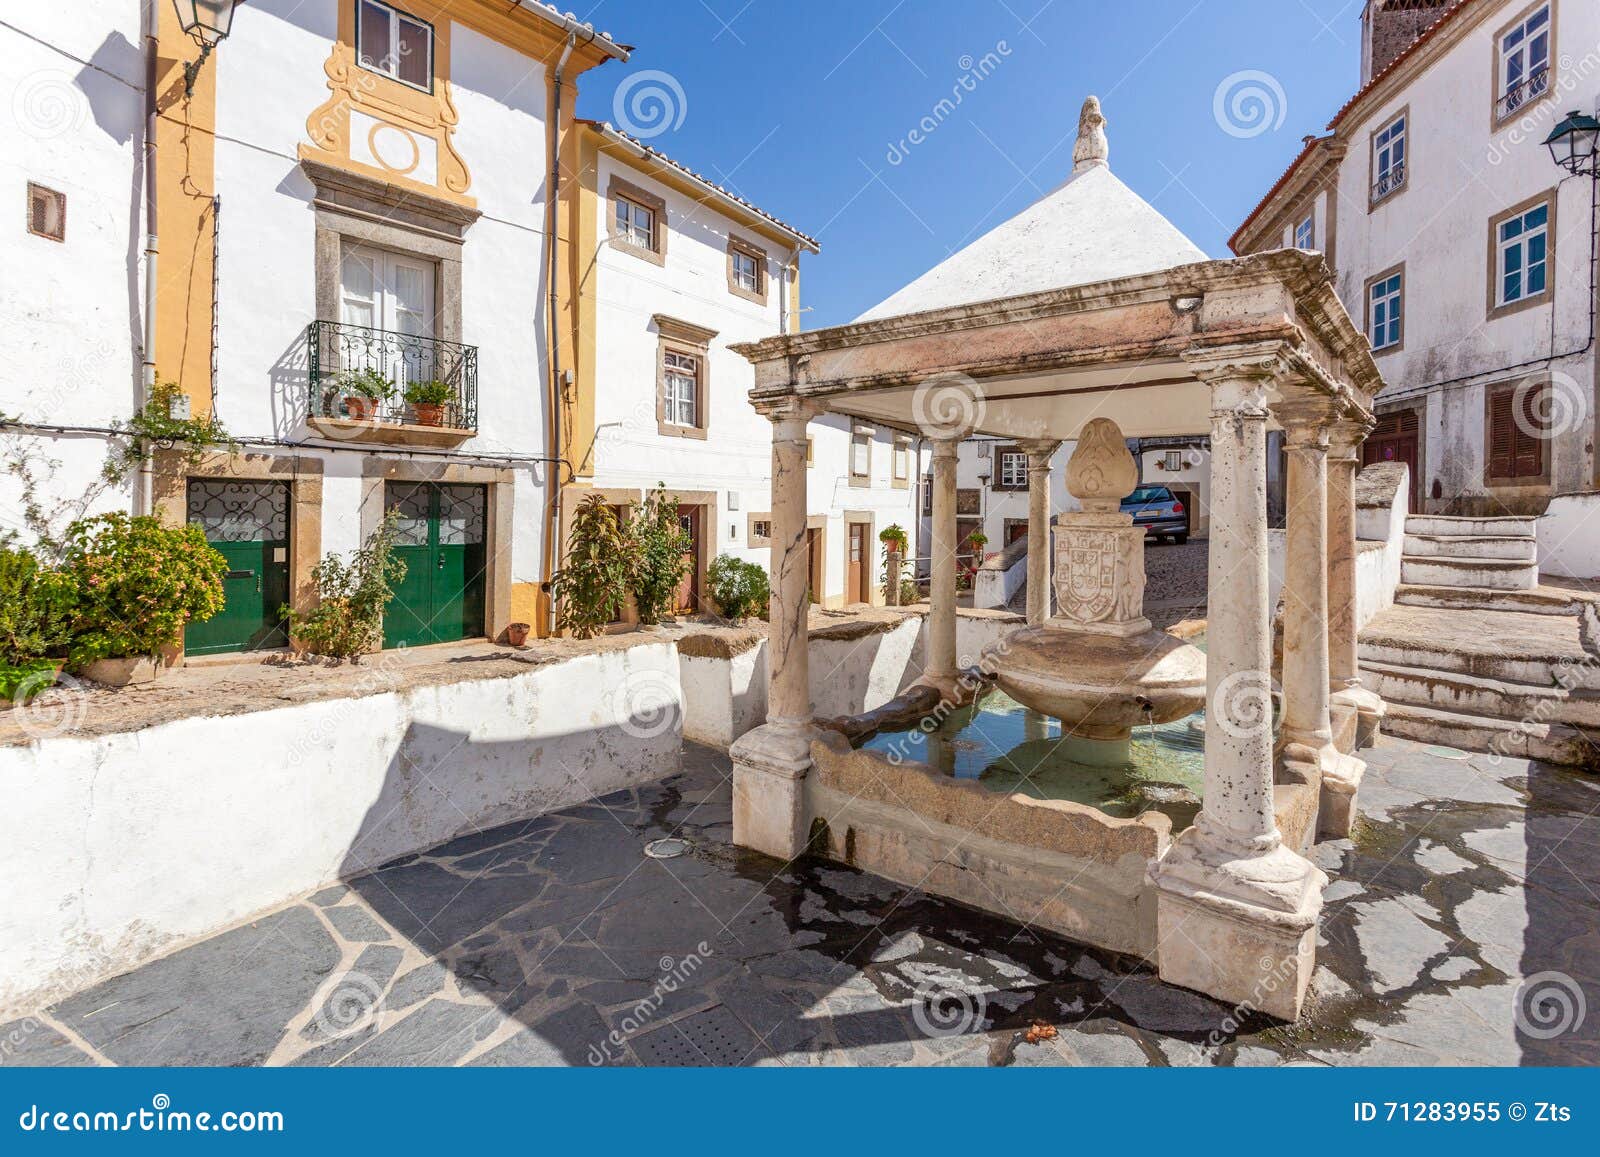 fonte da vila (town's fountain) in the jewish quarter of castelo de vide